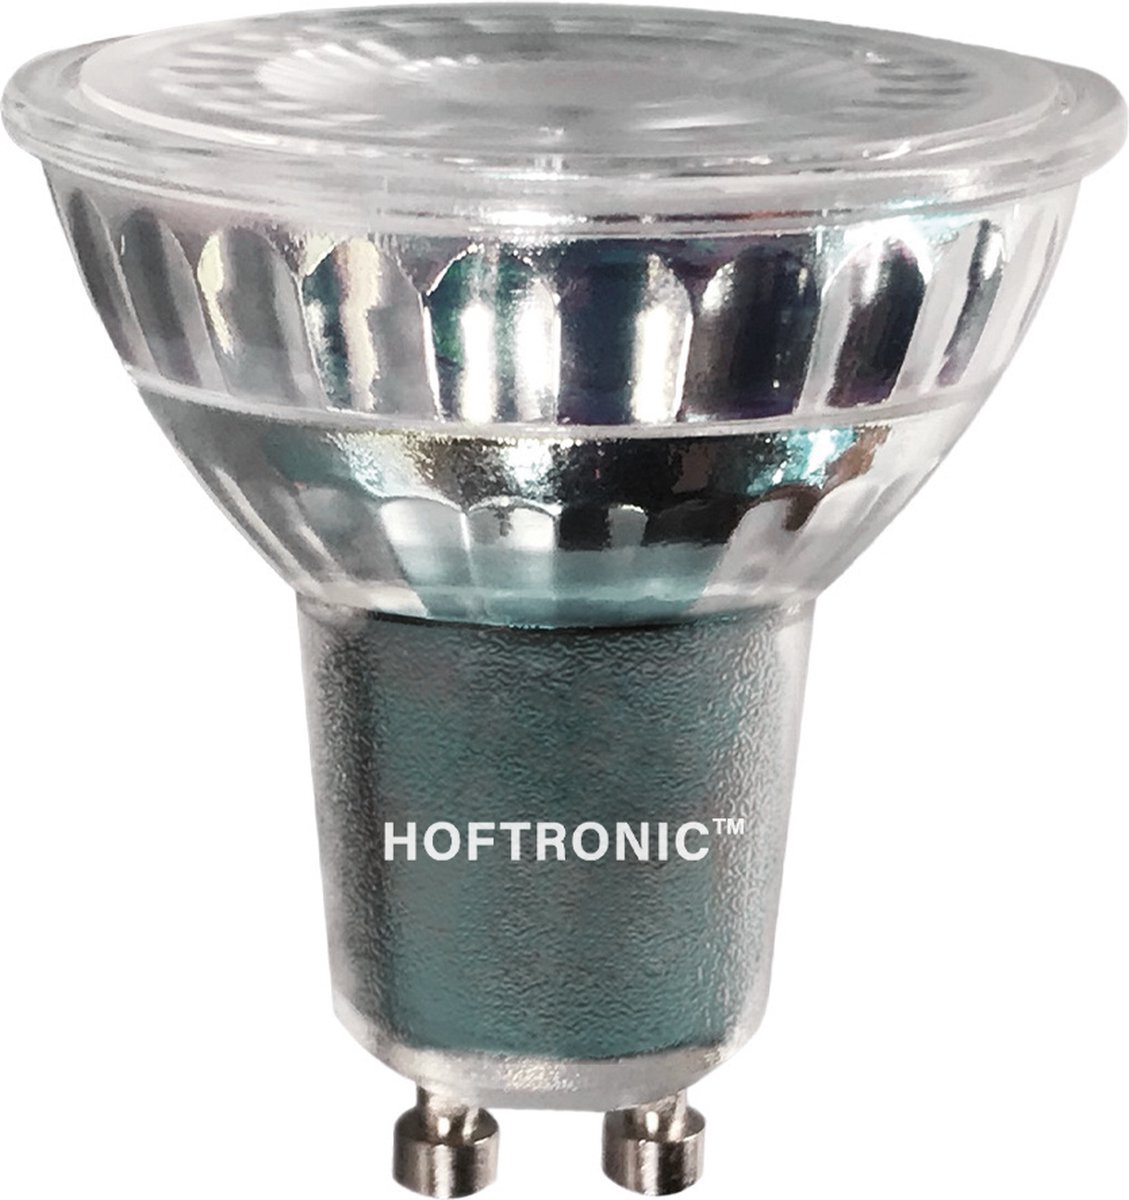 HOFTRONIC - Voordeelpack 10x GU10 LED spots 5 Watt 400 lumen - 2700K Warm  wit licht -... | bol.com